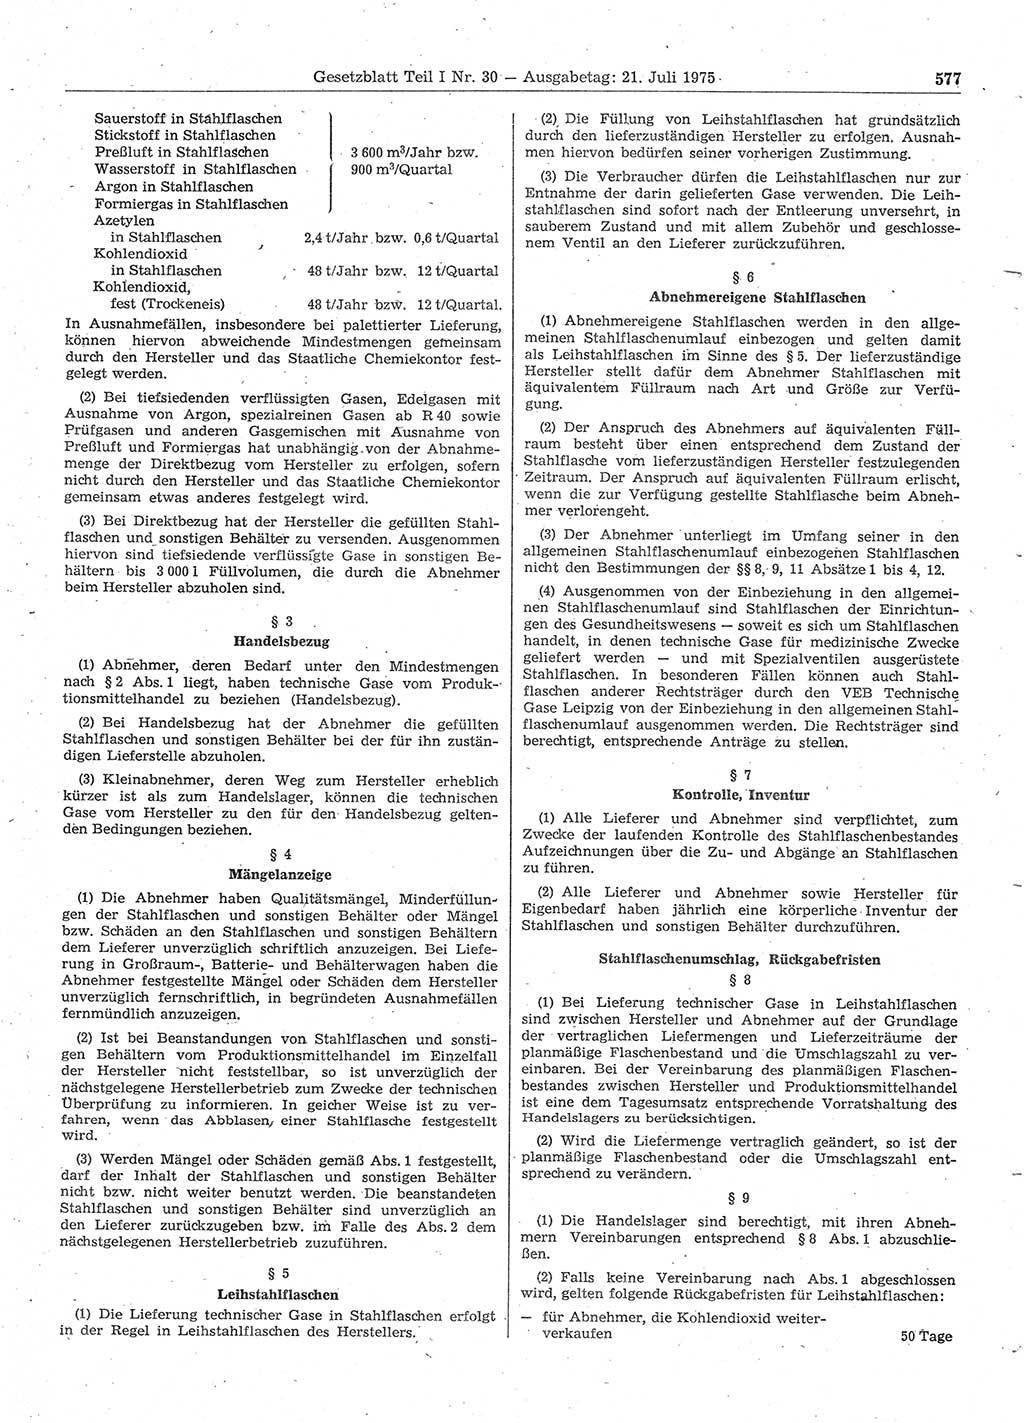 Gesetzblatt (GBl.) der Deutschen Demokratischen Republik (DDR) Teil Ⅰ 1975, Seite 577 (GBl. DDR Ⅰ 1975, S. 577)